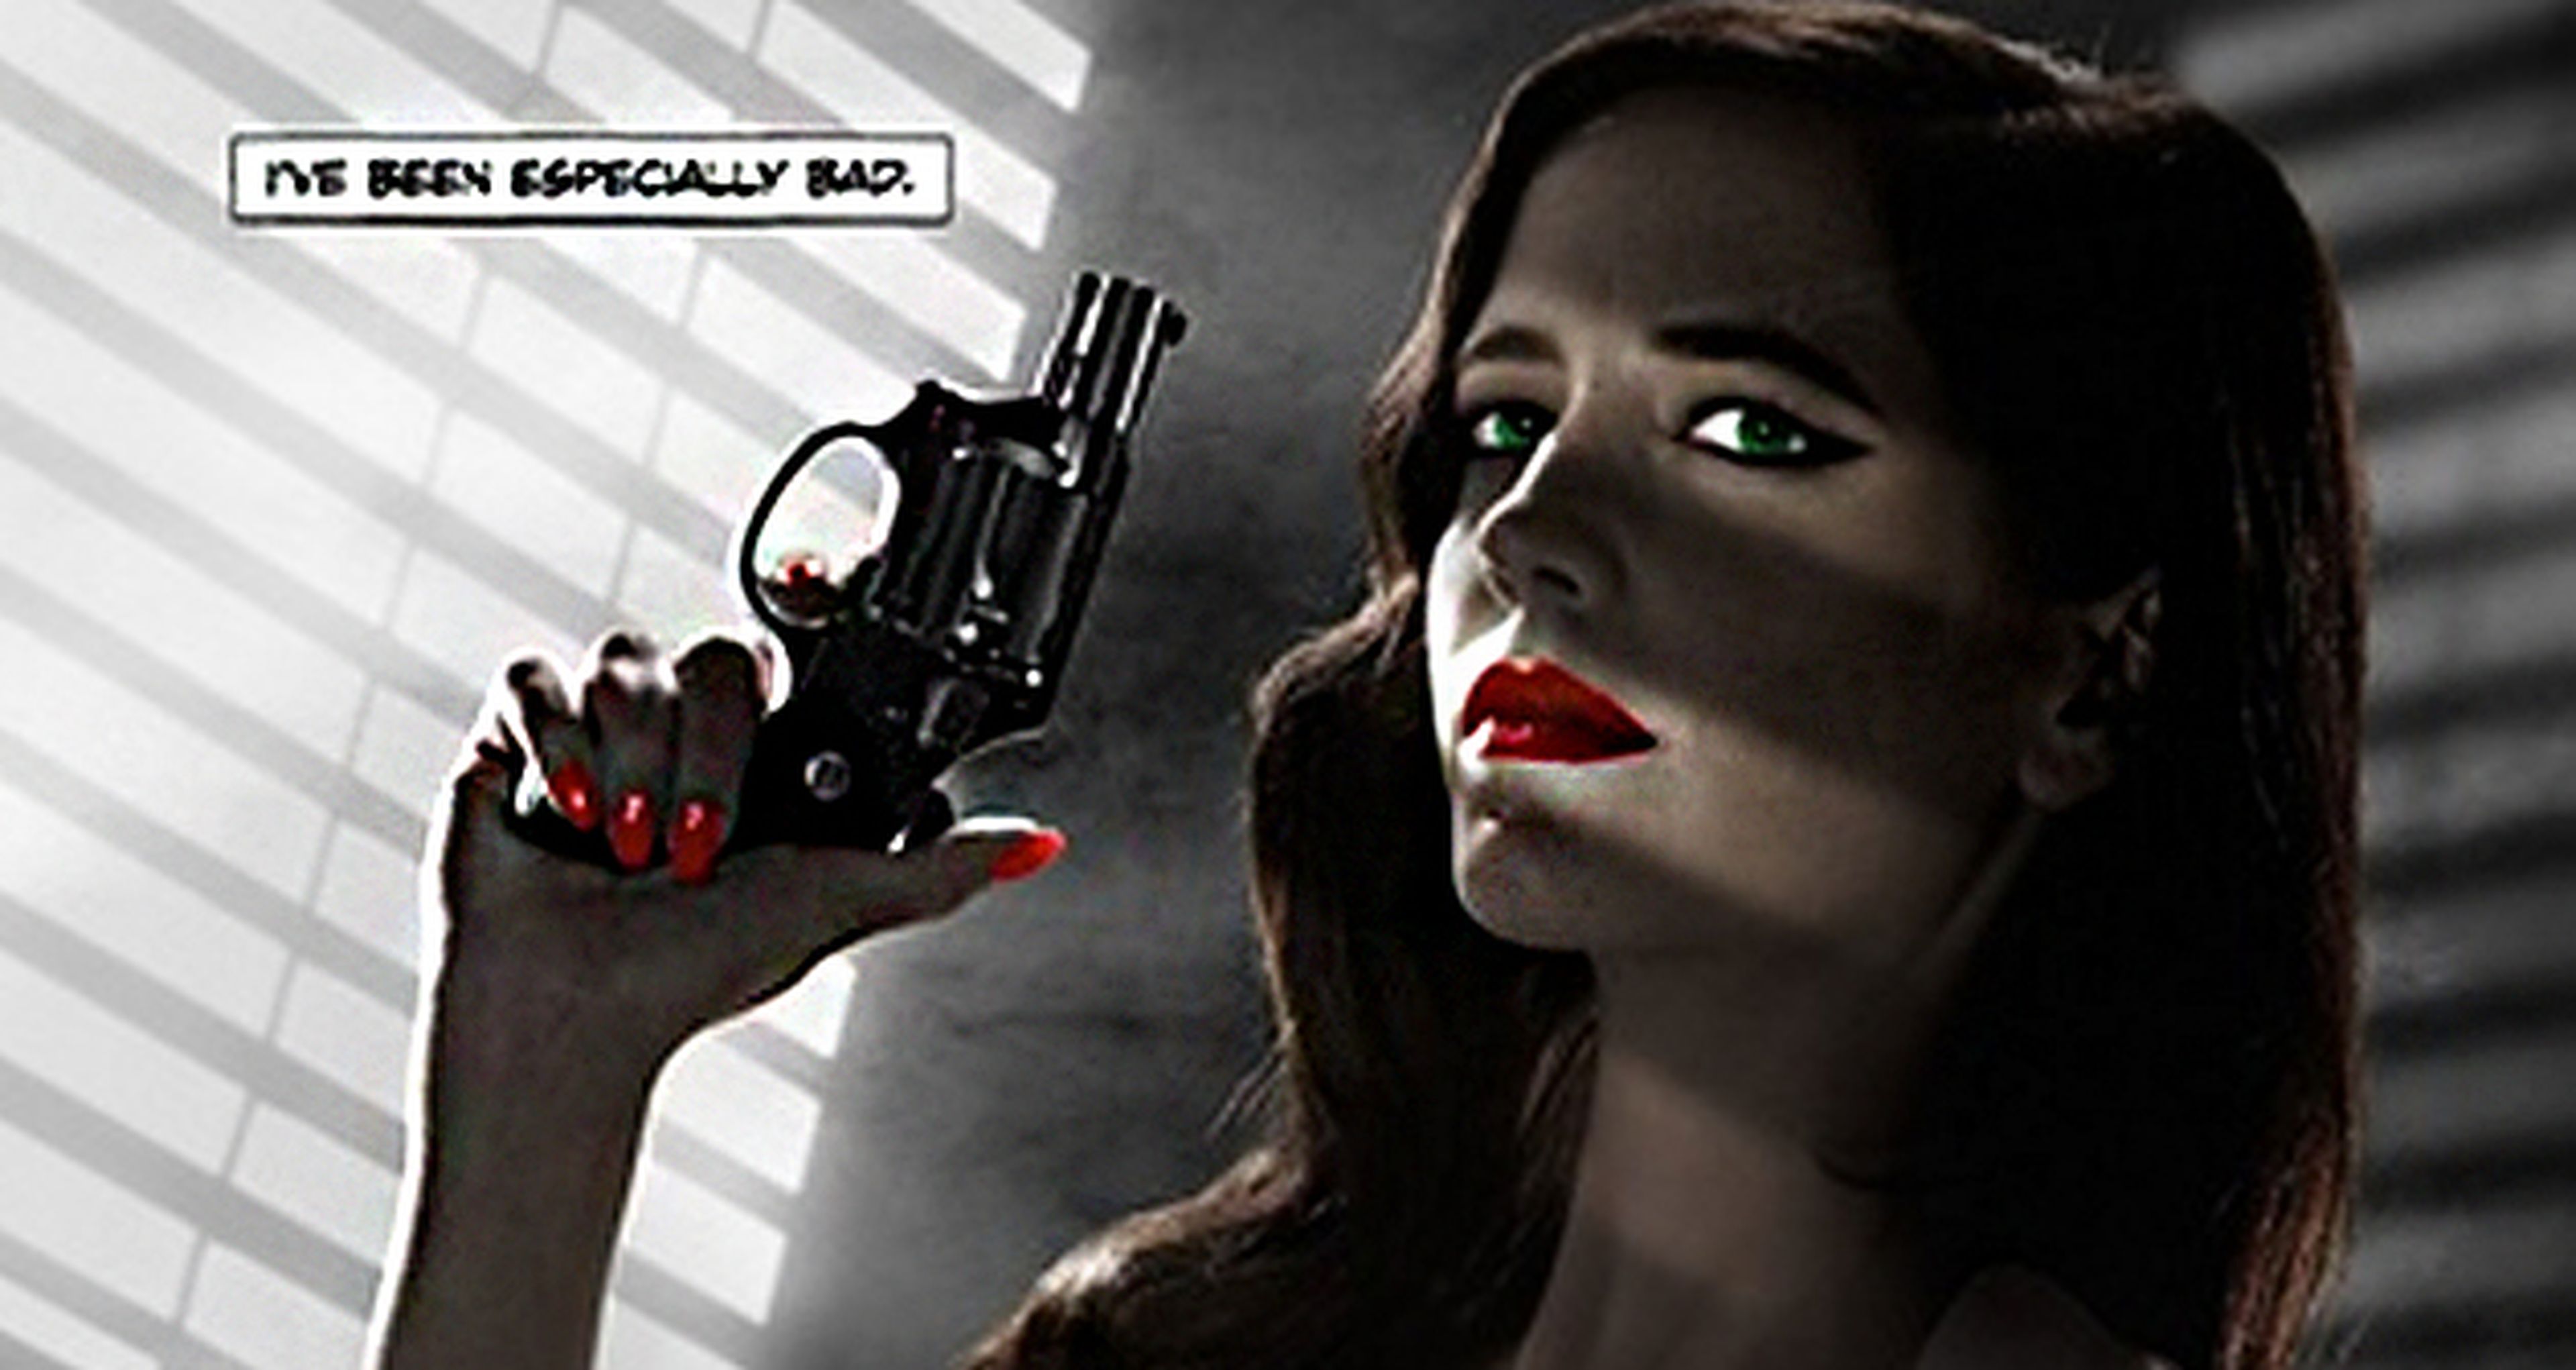 Eva Green censurada en un cartel de Sin City por ser demasiado sexy